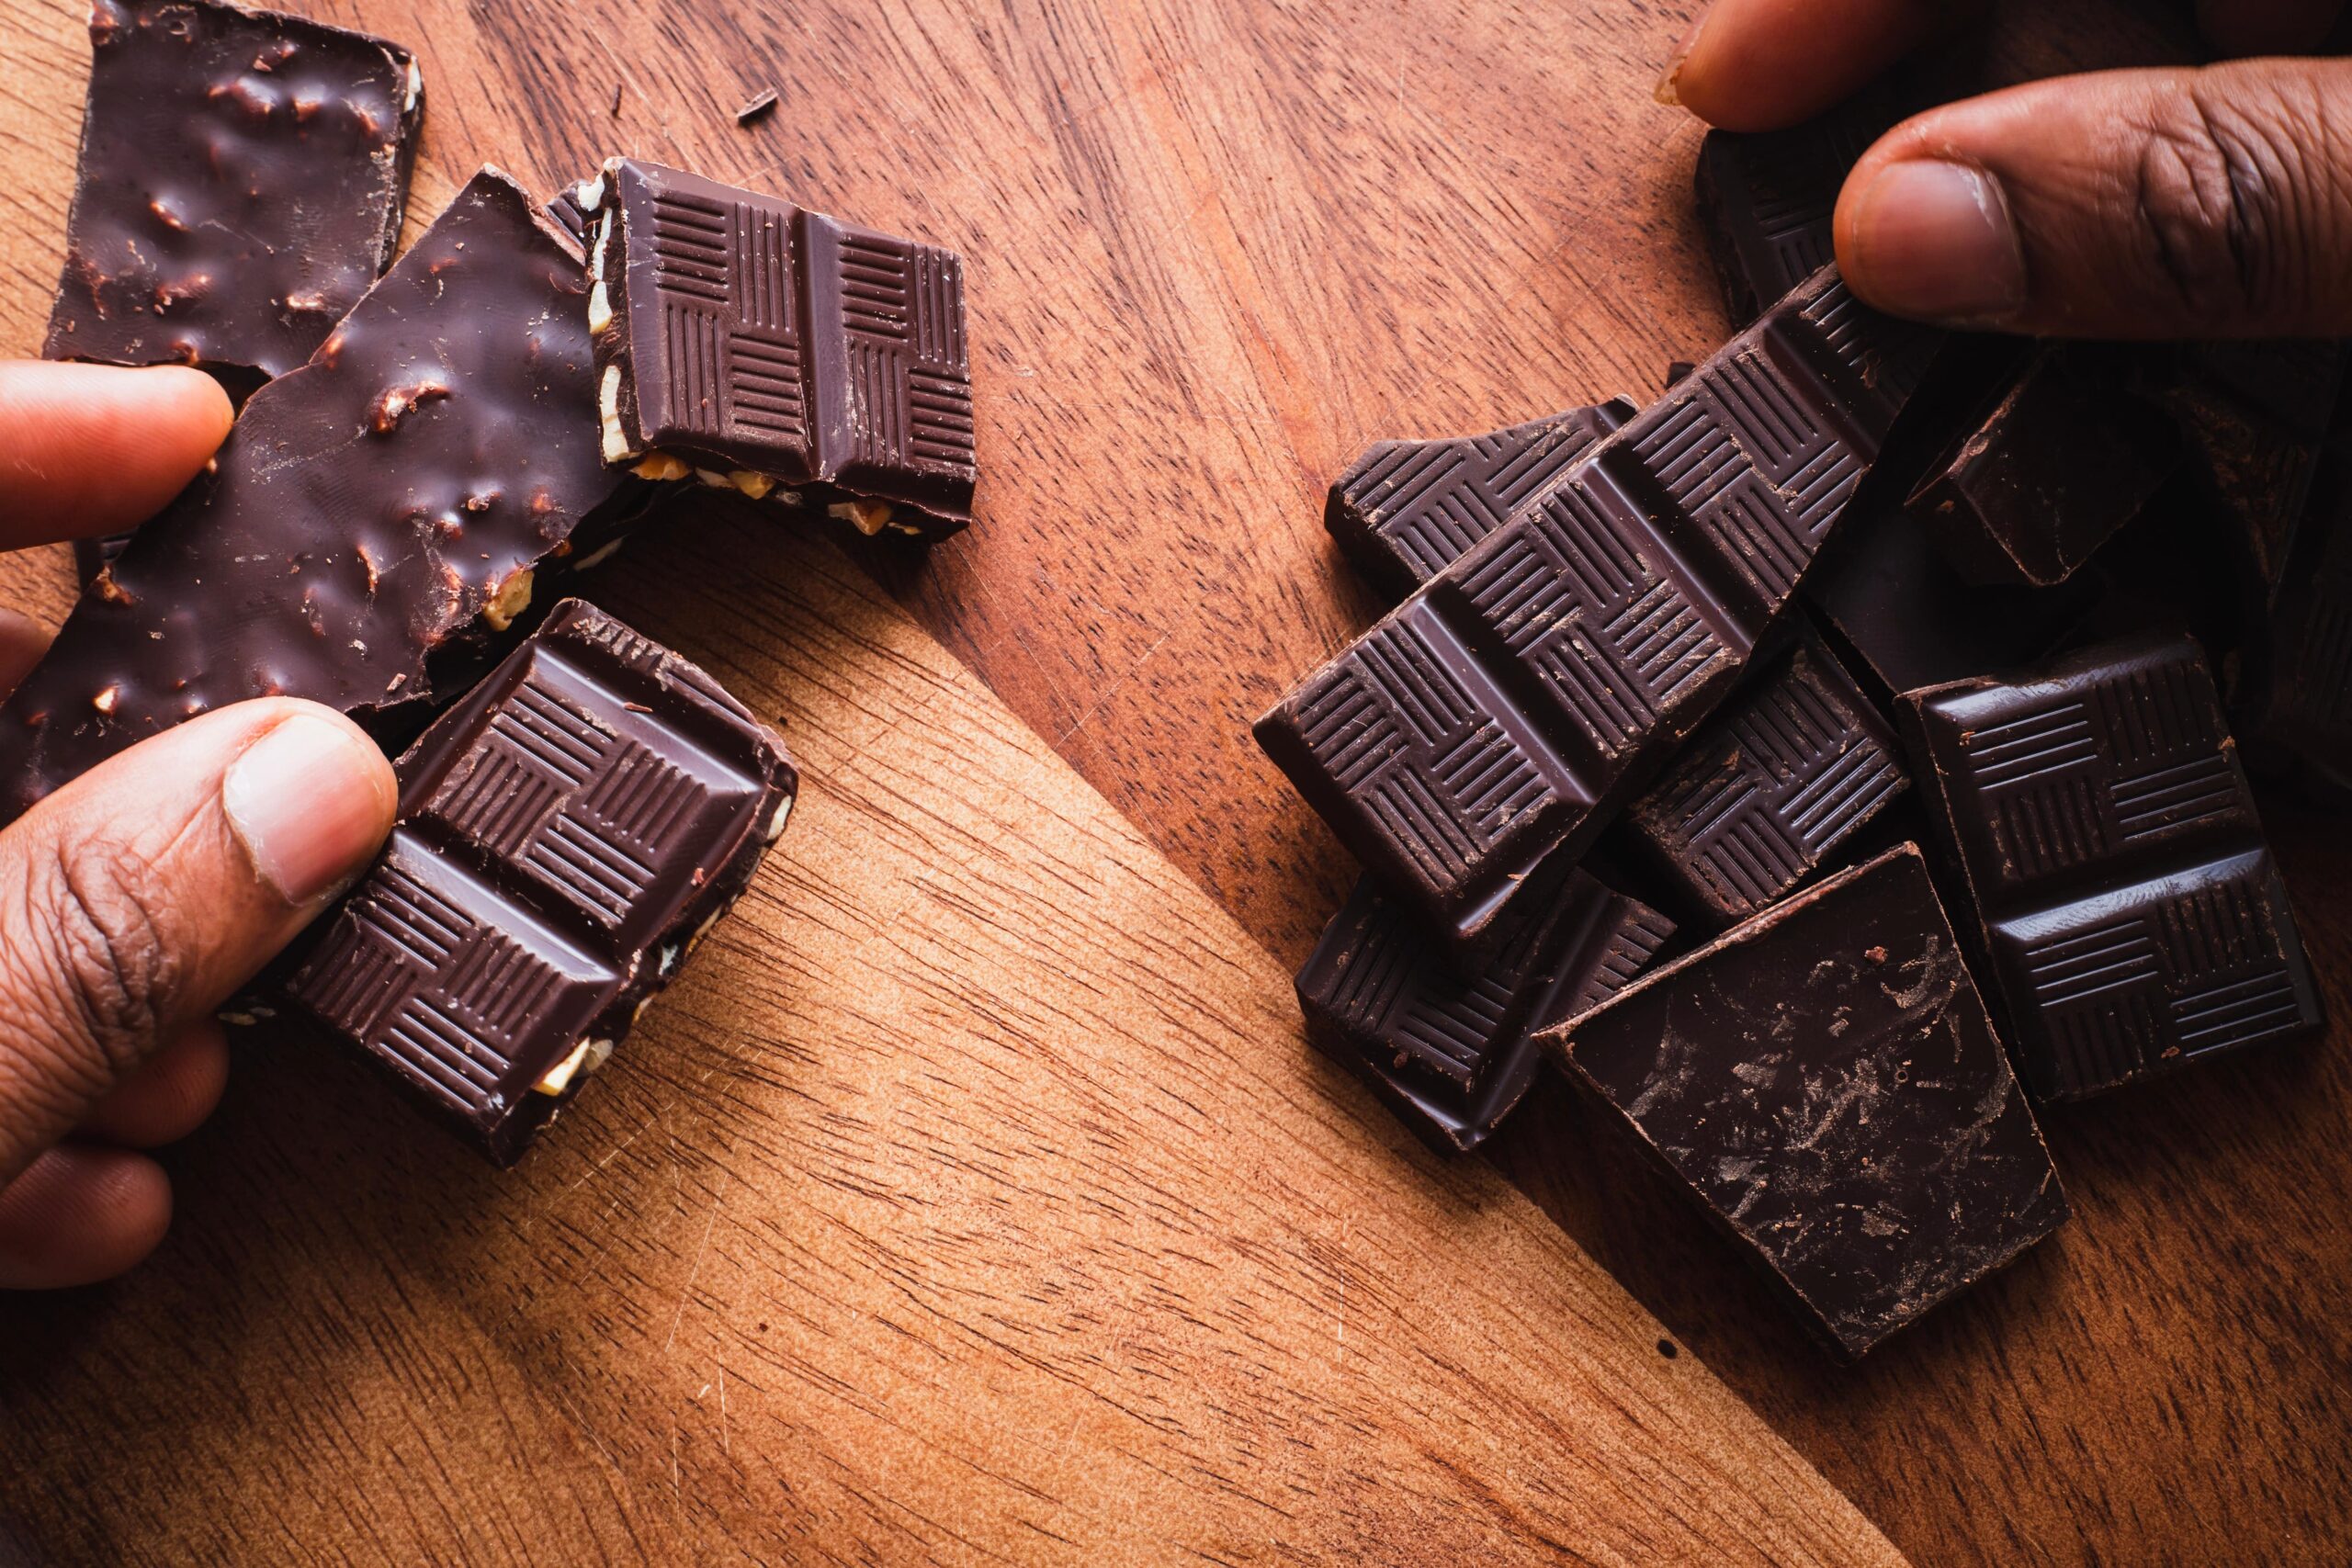 Le chocolat : aliment anti-déprime ou piège nutritionnel ?